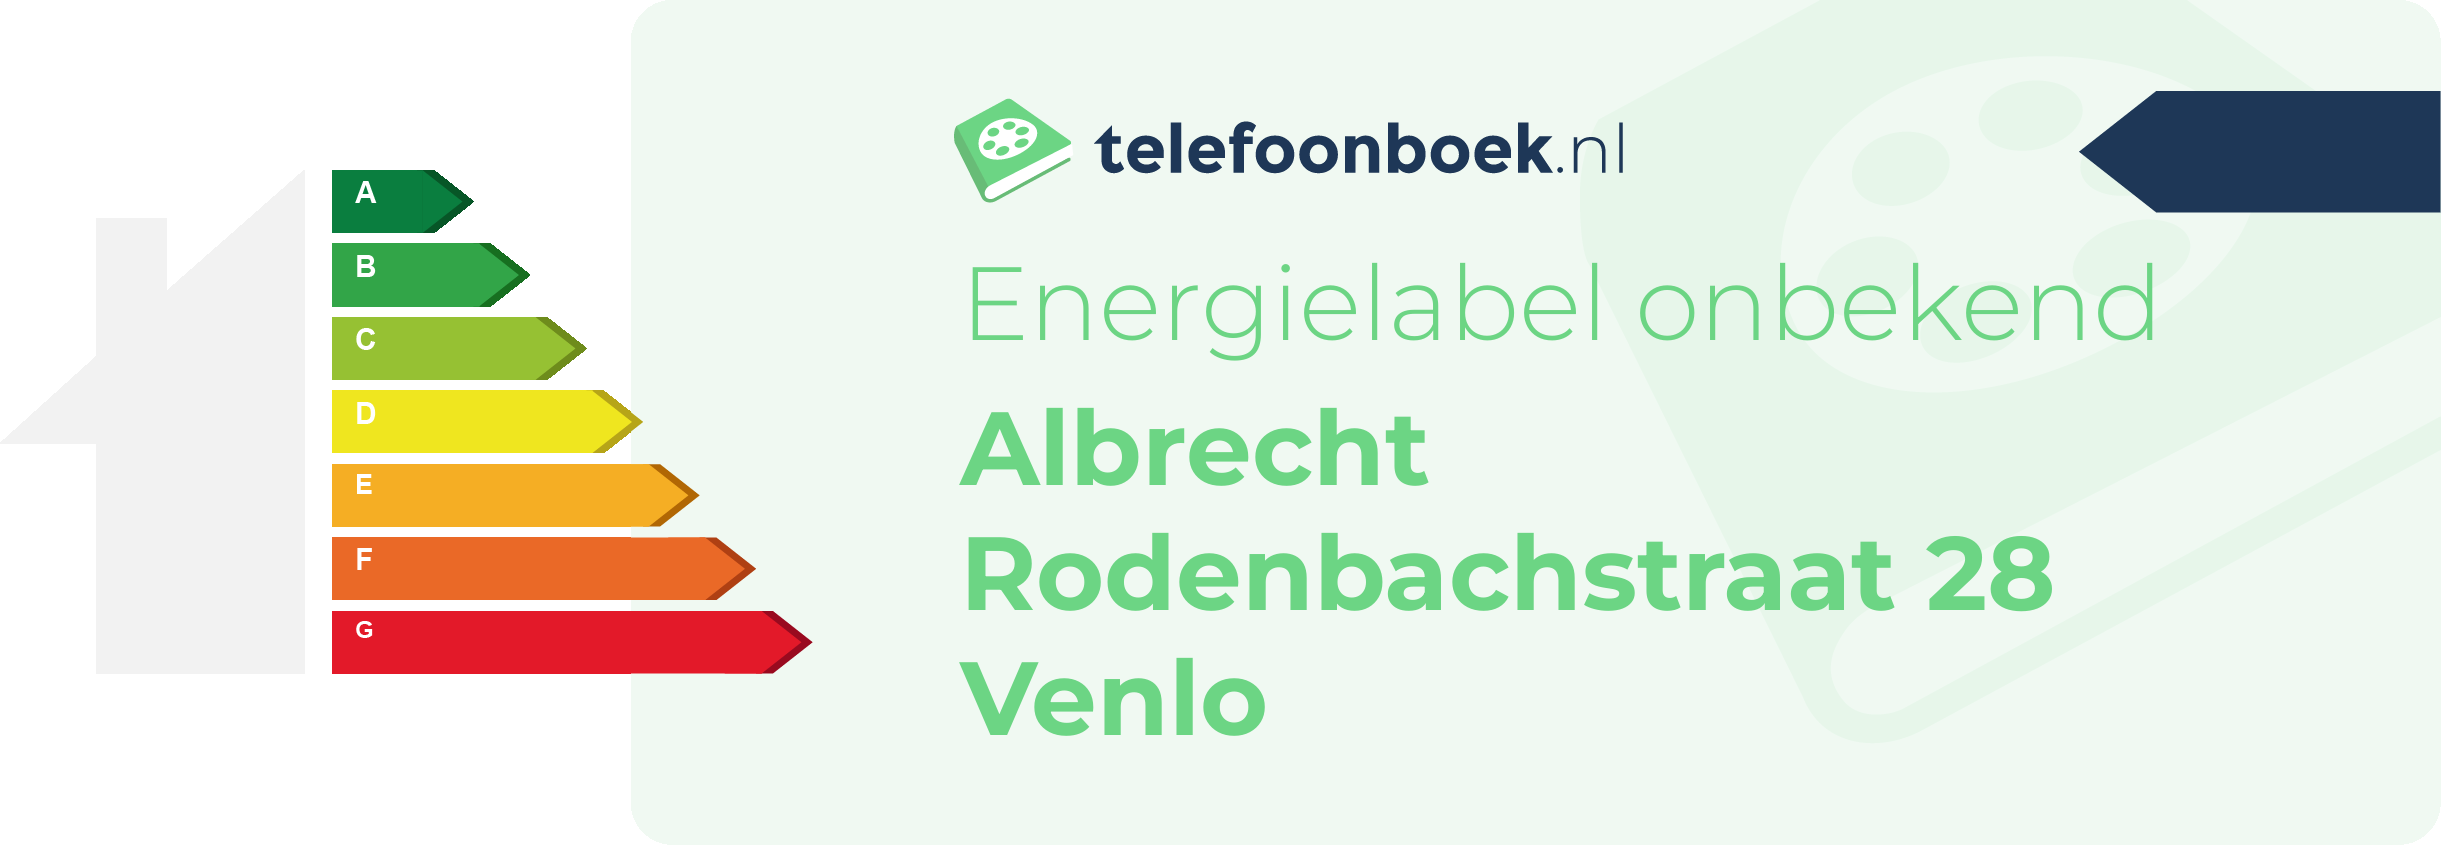 Energielabel Albrecht Rodenbachstraat 28 Venlo